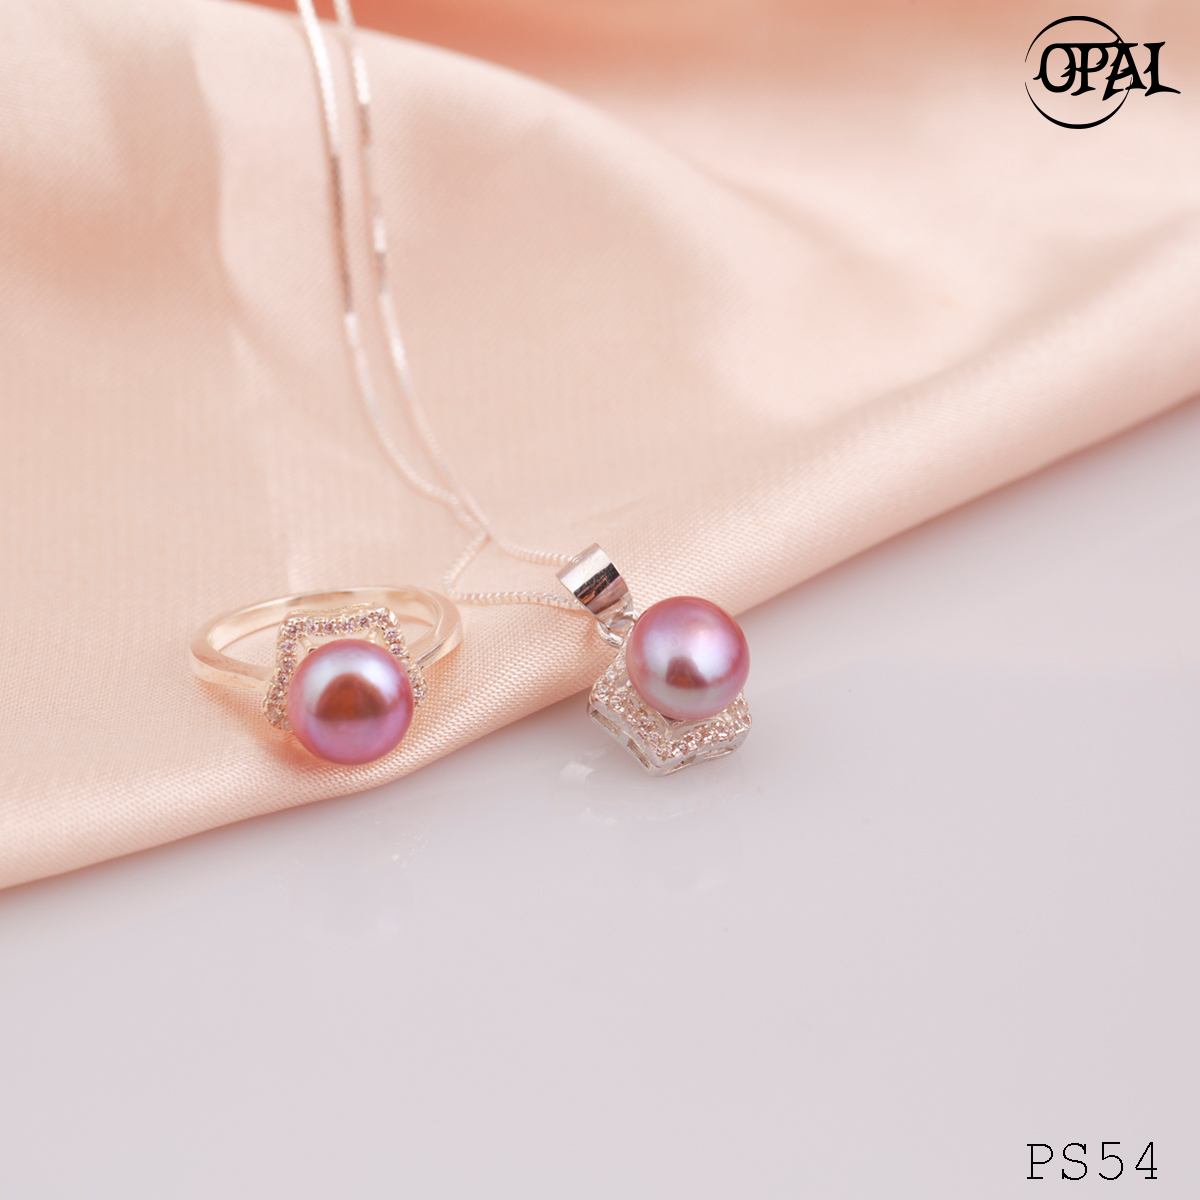  PS54-Bộ trang sức bạc đính ngọc trai OPAL 